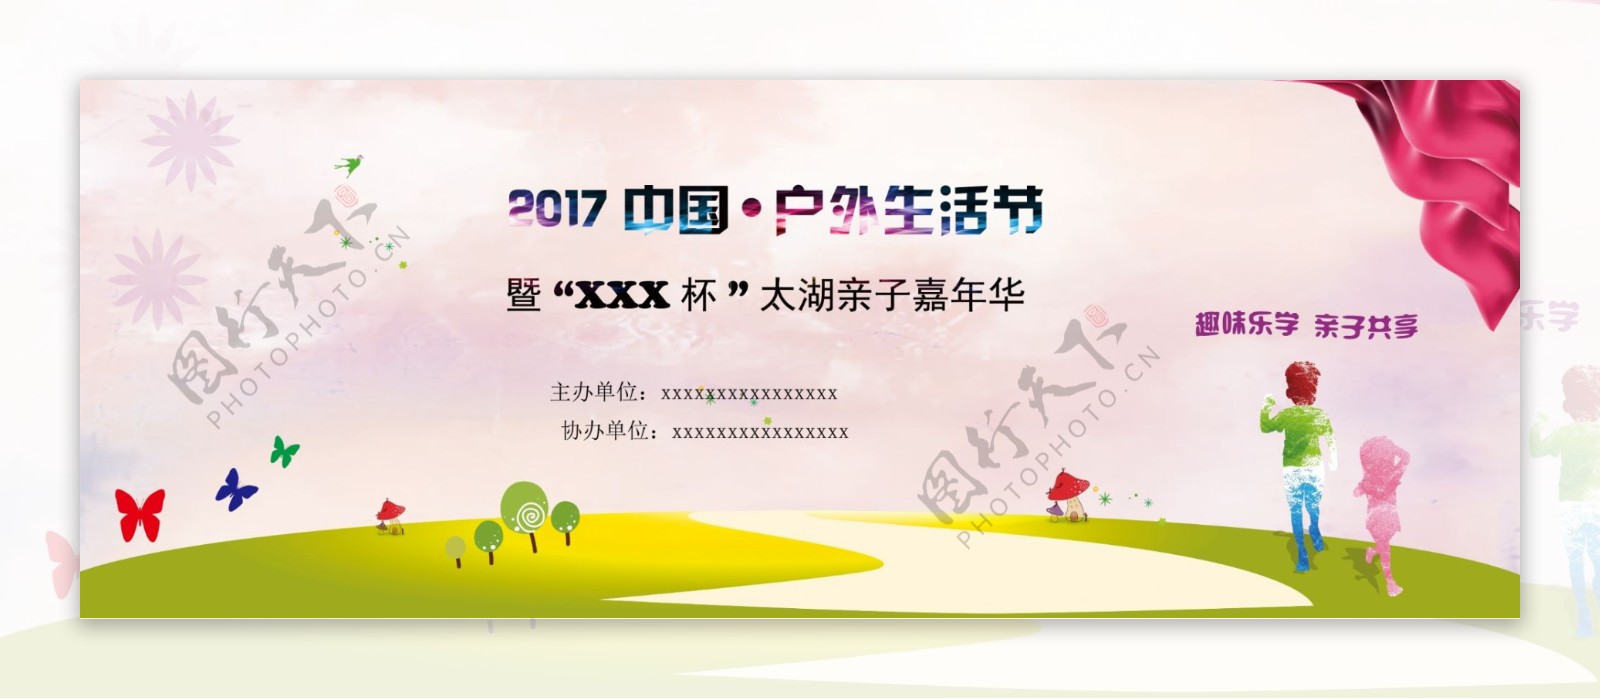 2017户外生活节海报